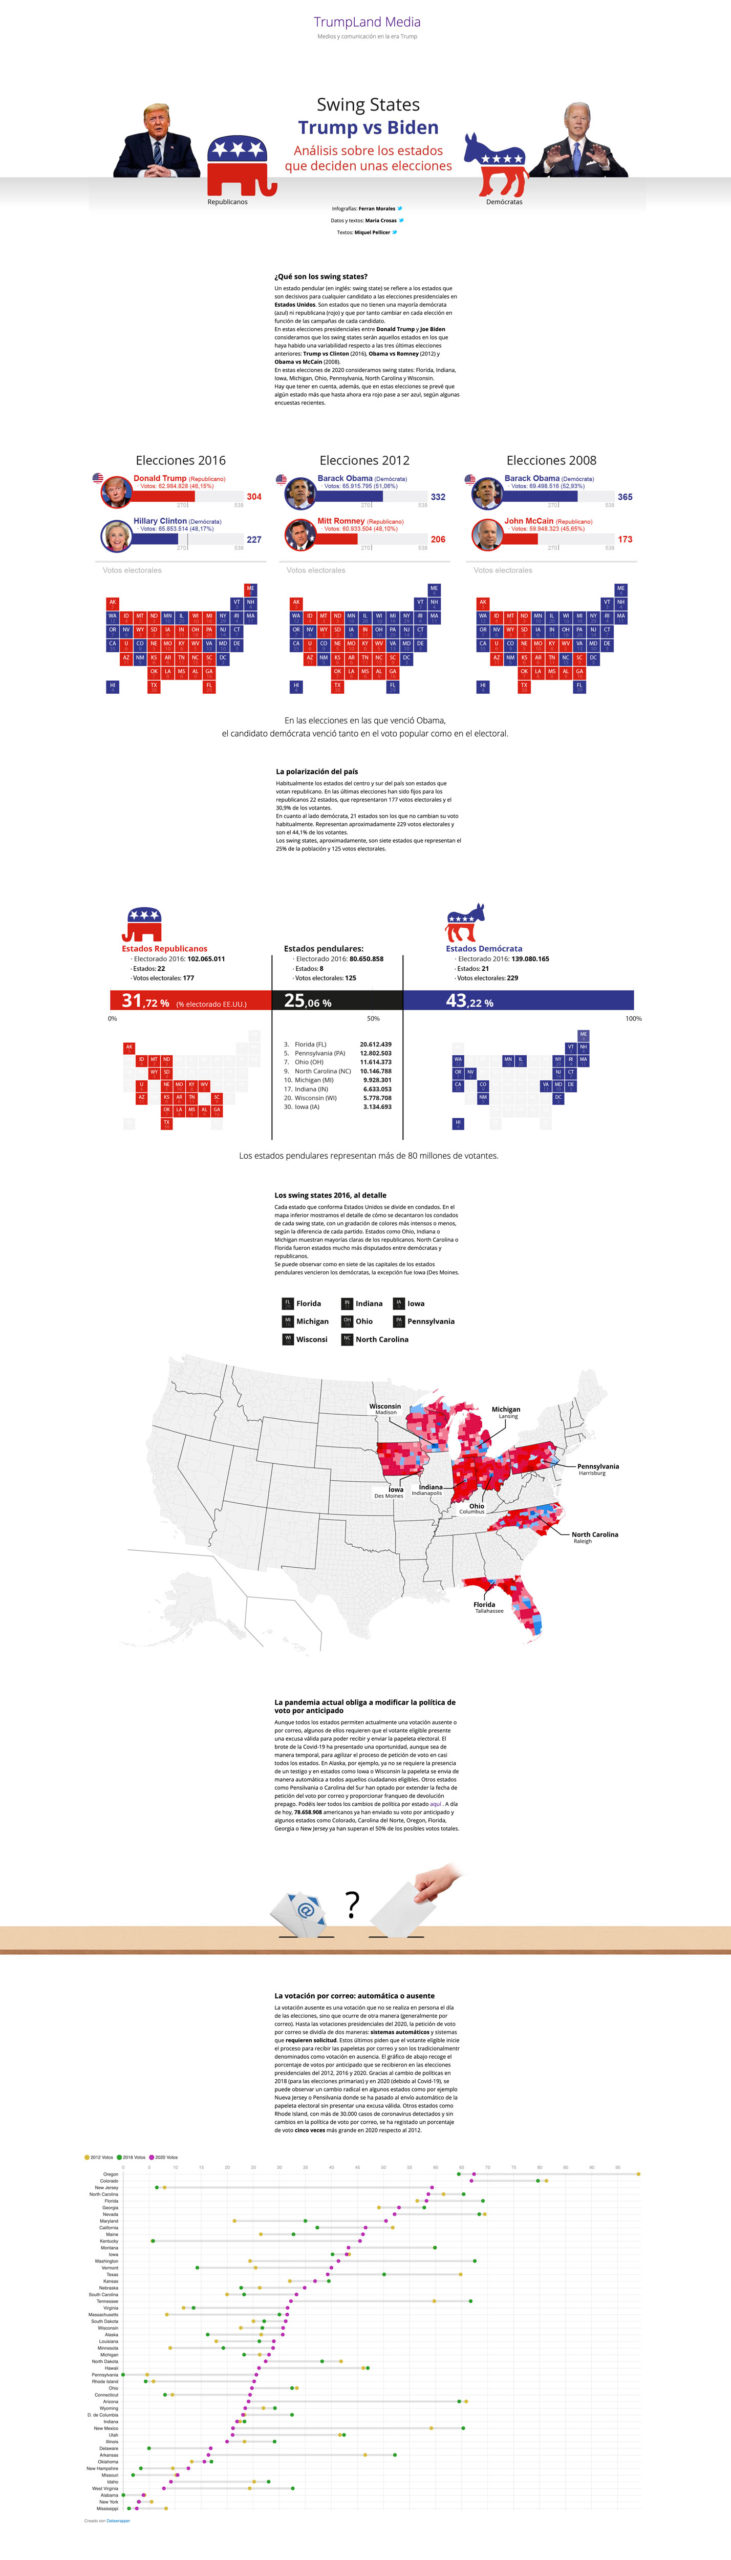 Elecciones EEUU Donald Trump 2020 visualización de datos, especial